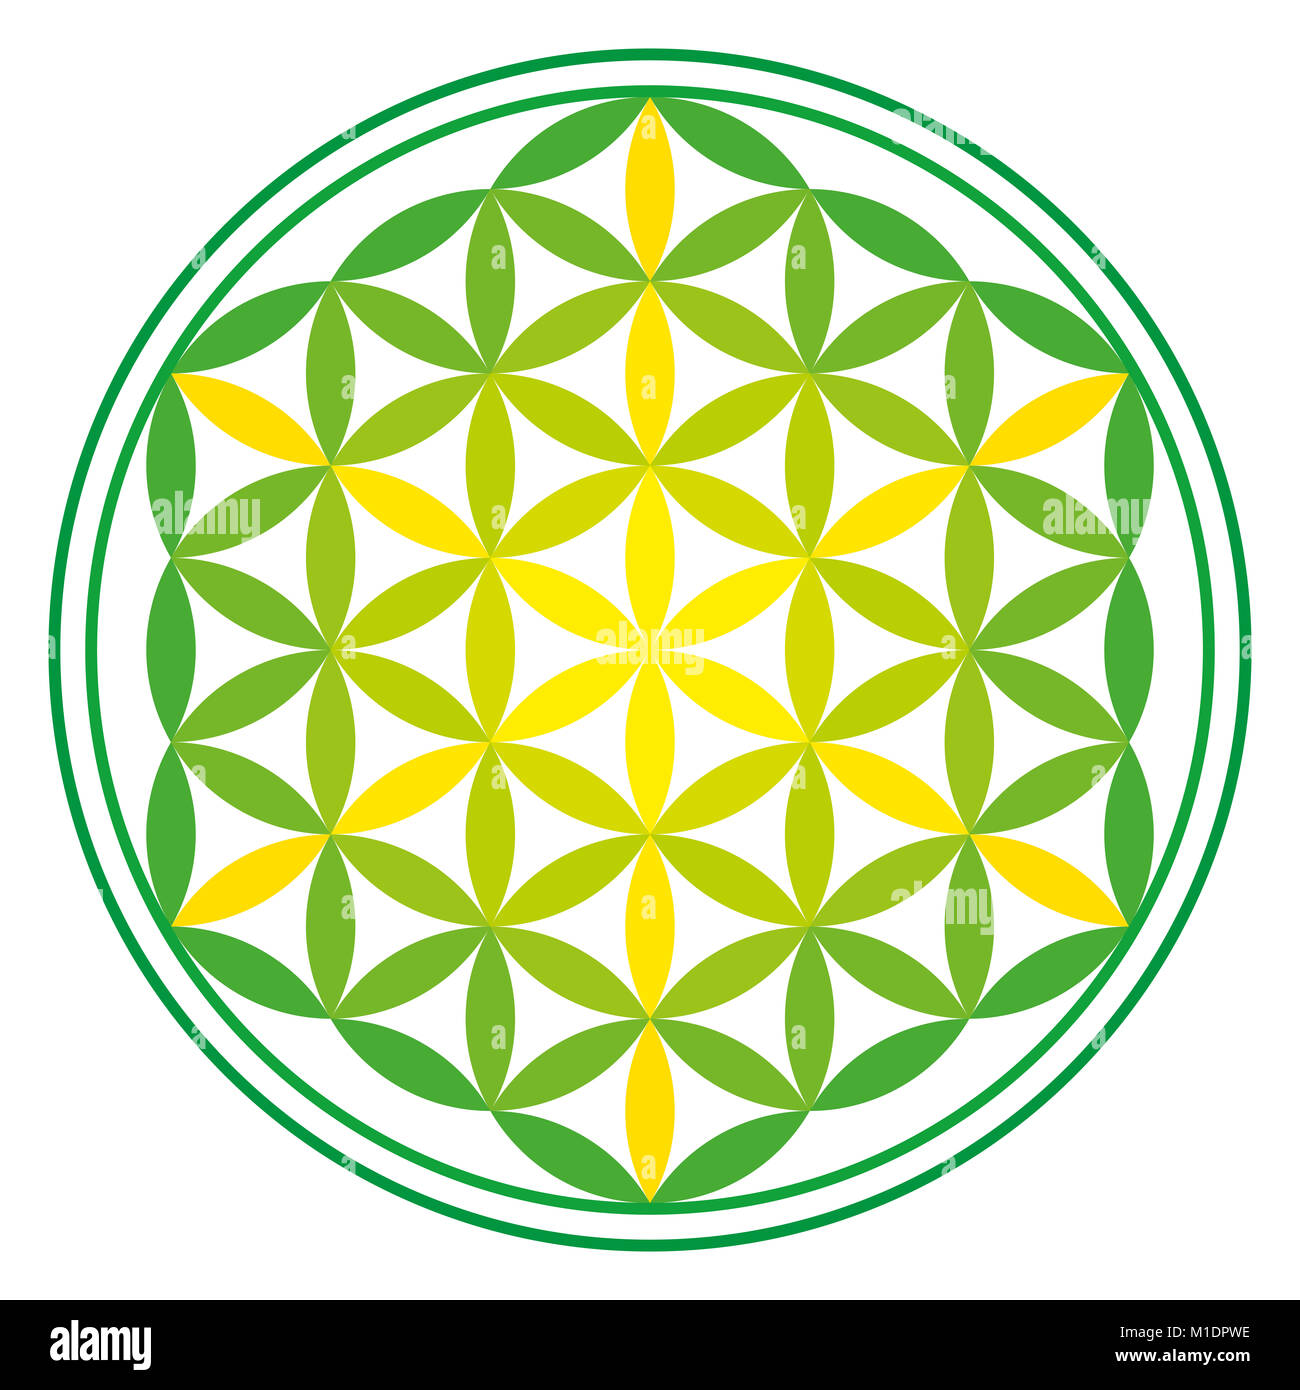 Fleur de vie l'énergie verte sur fond blanc. Ancien symbole symétrique, composé de plusieurs cercles se chevauchant, formant une fleur comme motif. Banque D'Images